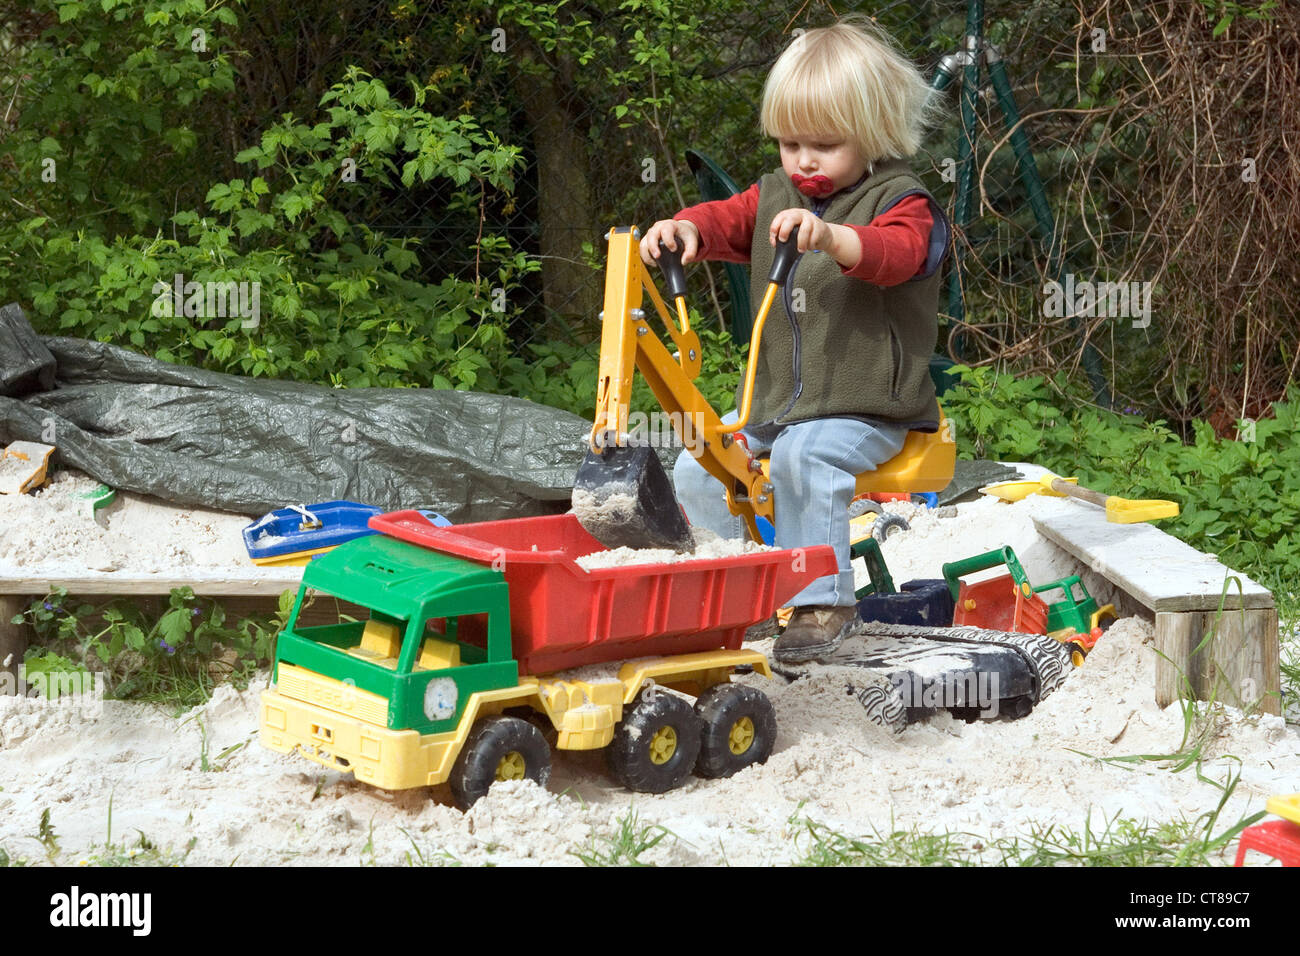 Un bambin jouant dans sandbox Banque D'Images